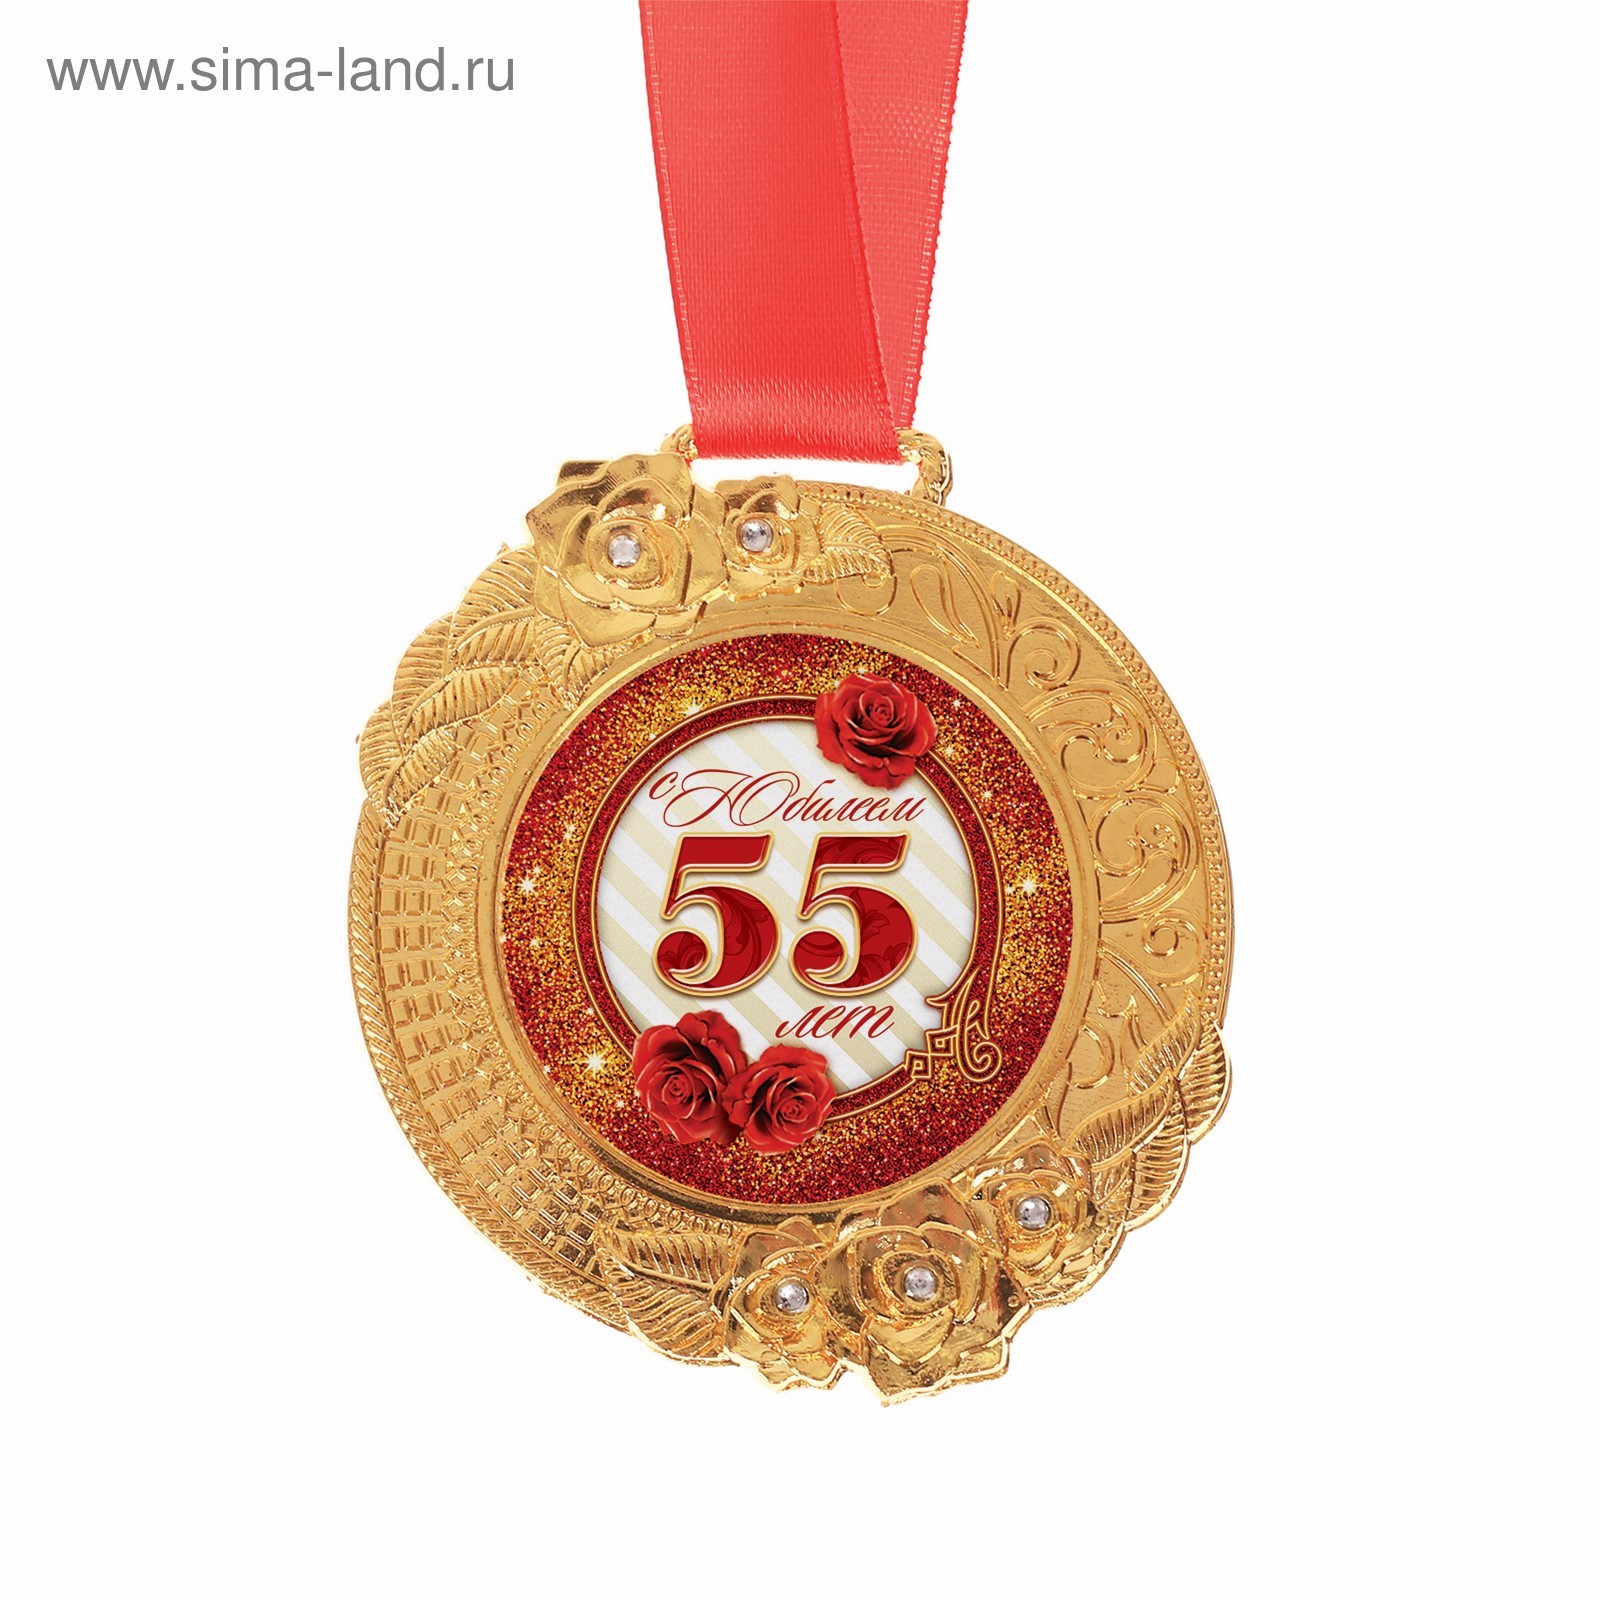 Медаль юбиляру 55 лет